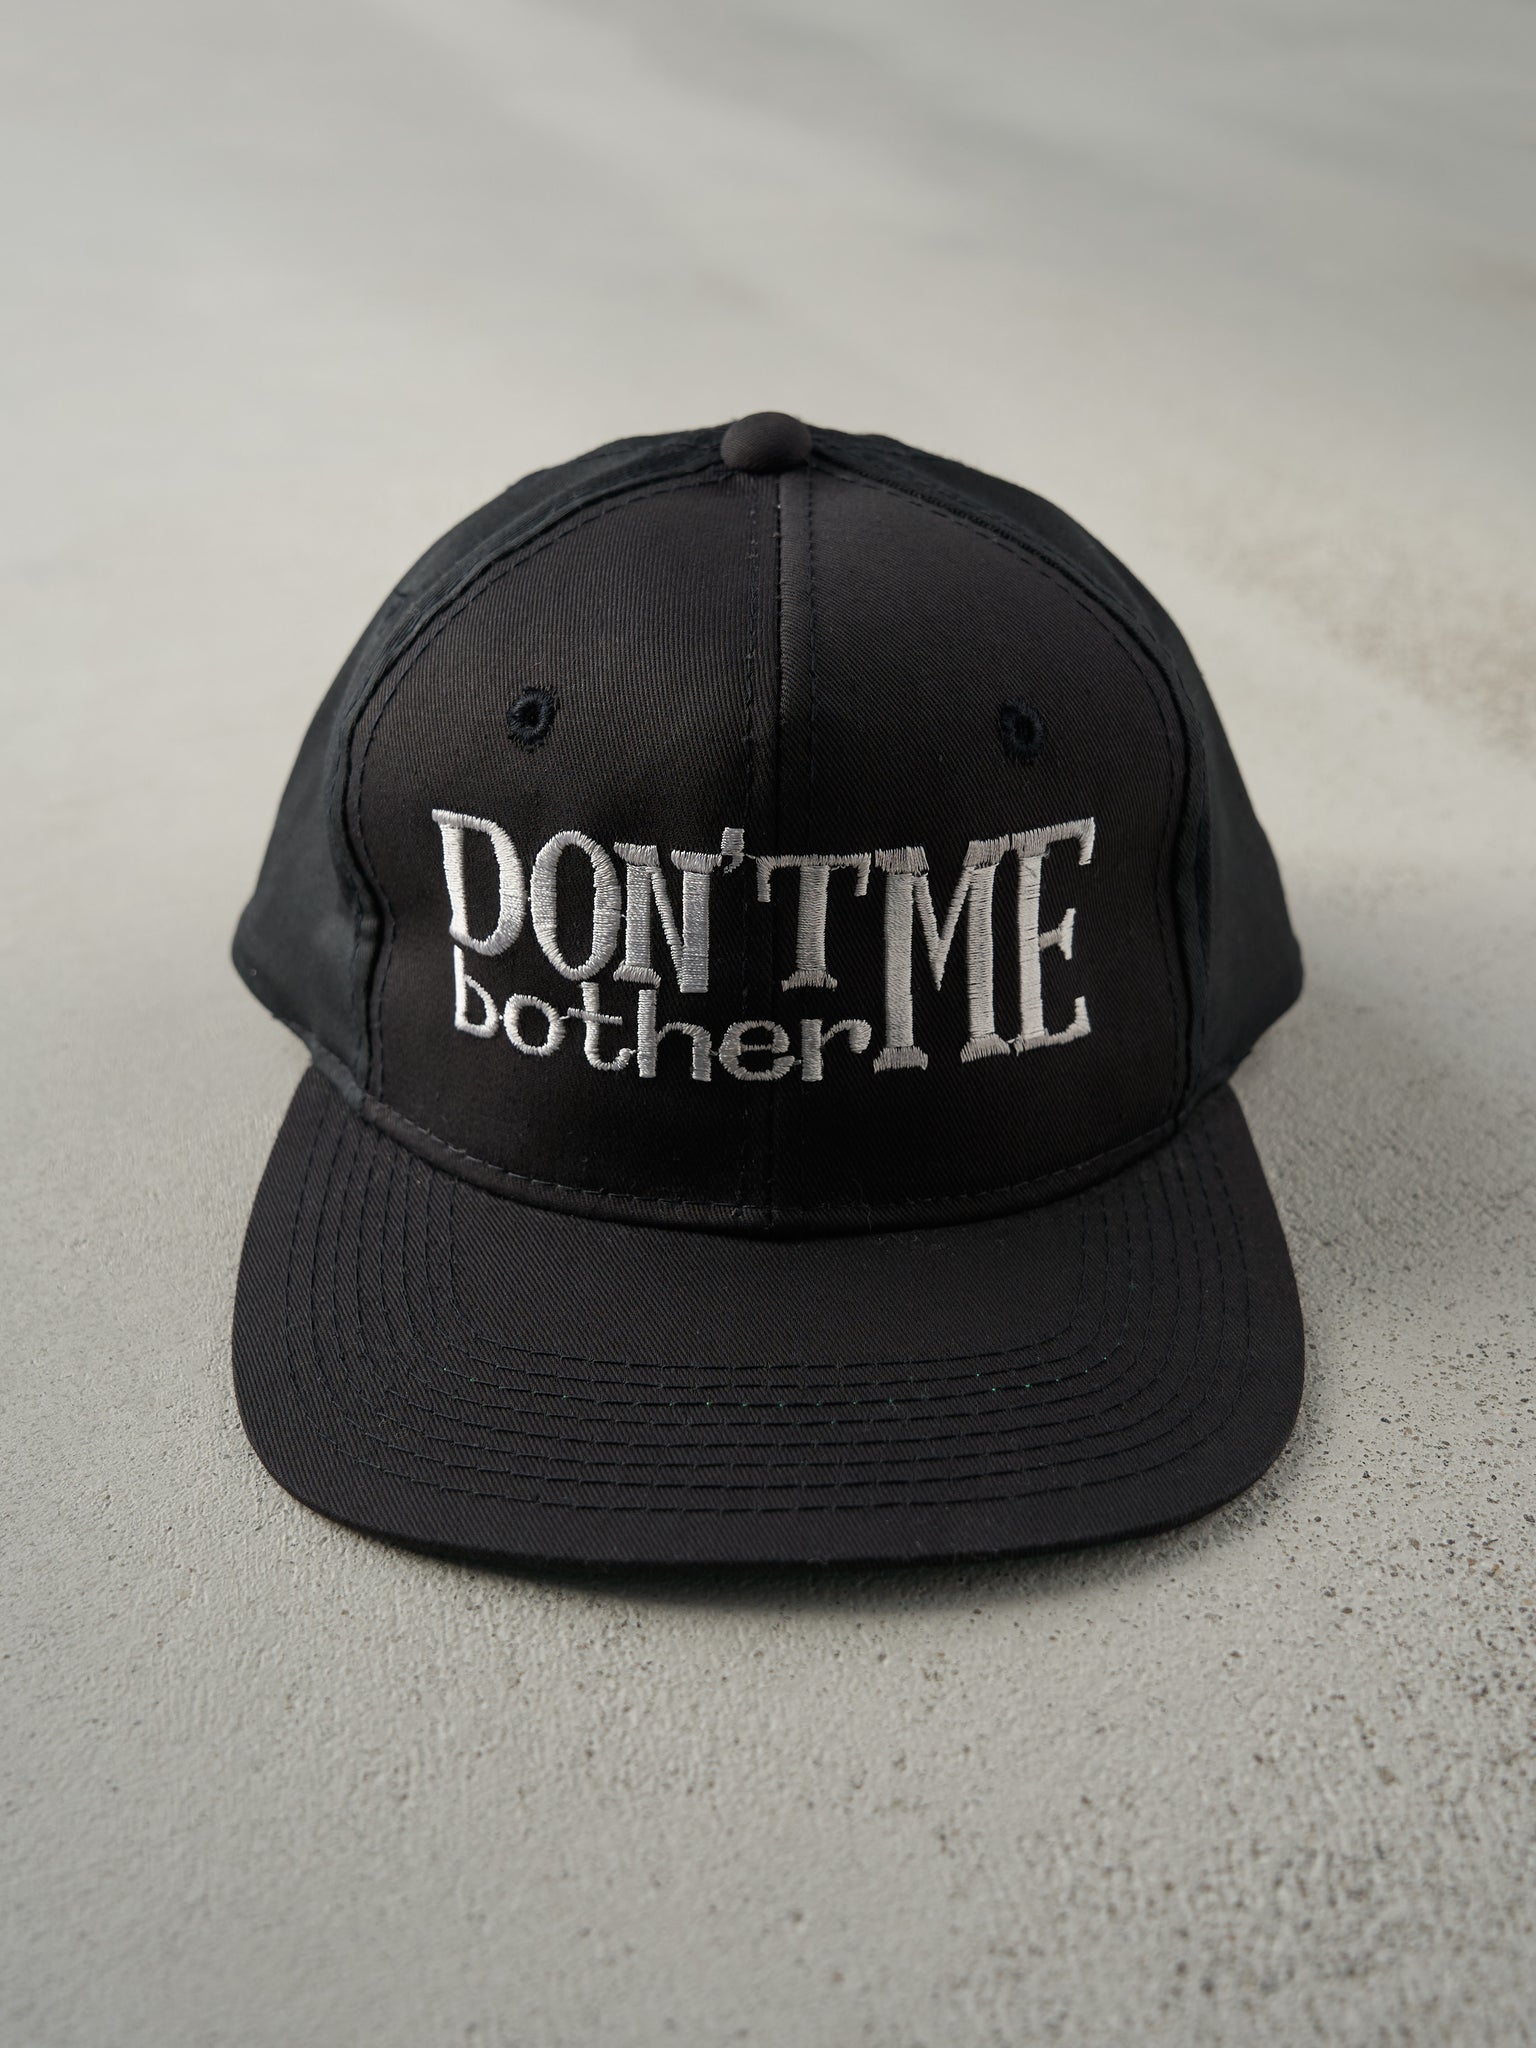 Vintage 90s Black Embroidered "Don't Bother Me" Snapback Hat